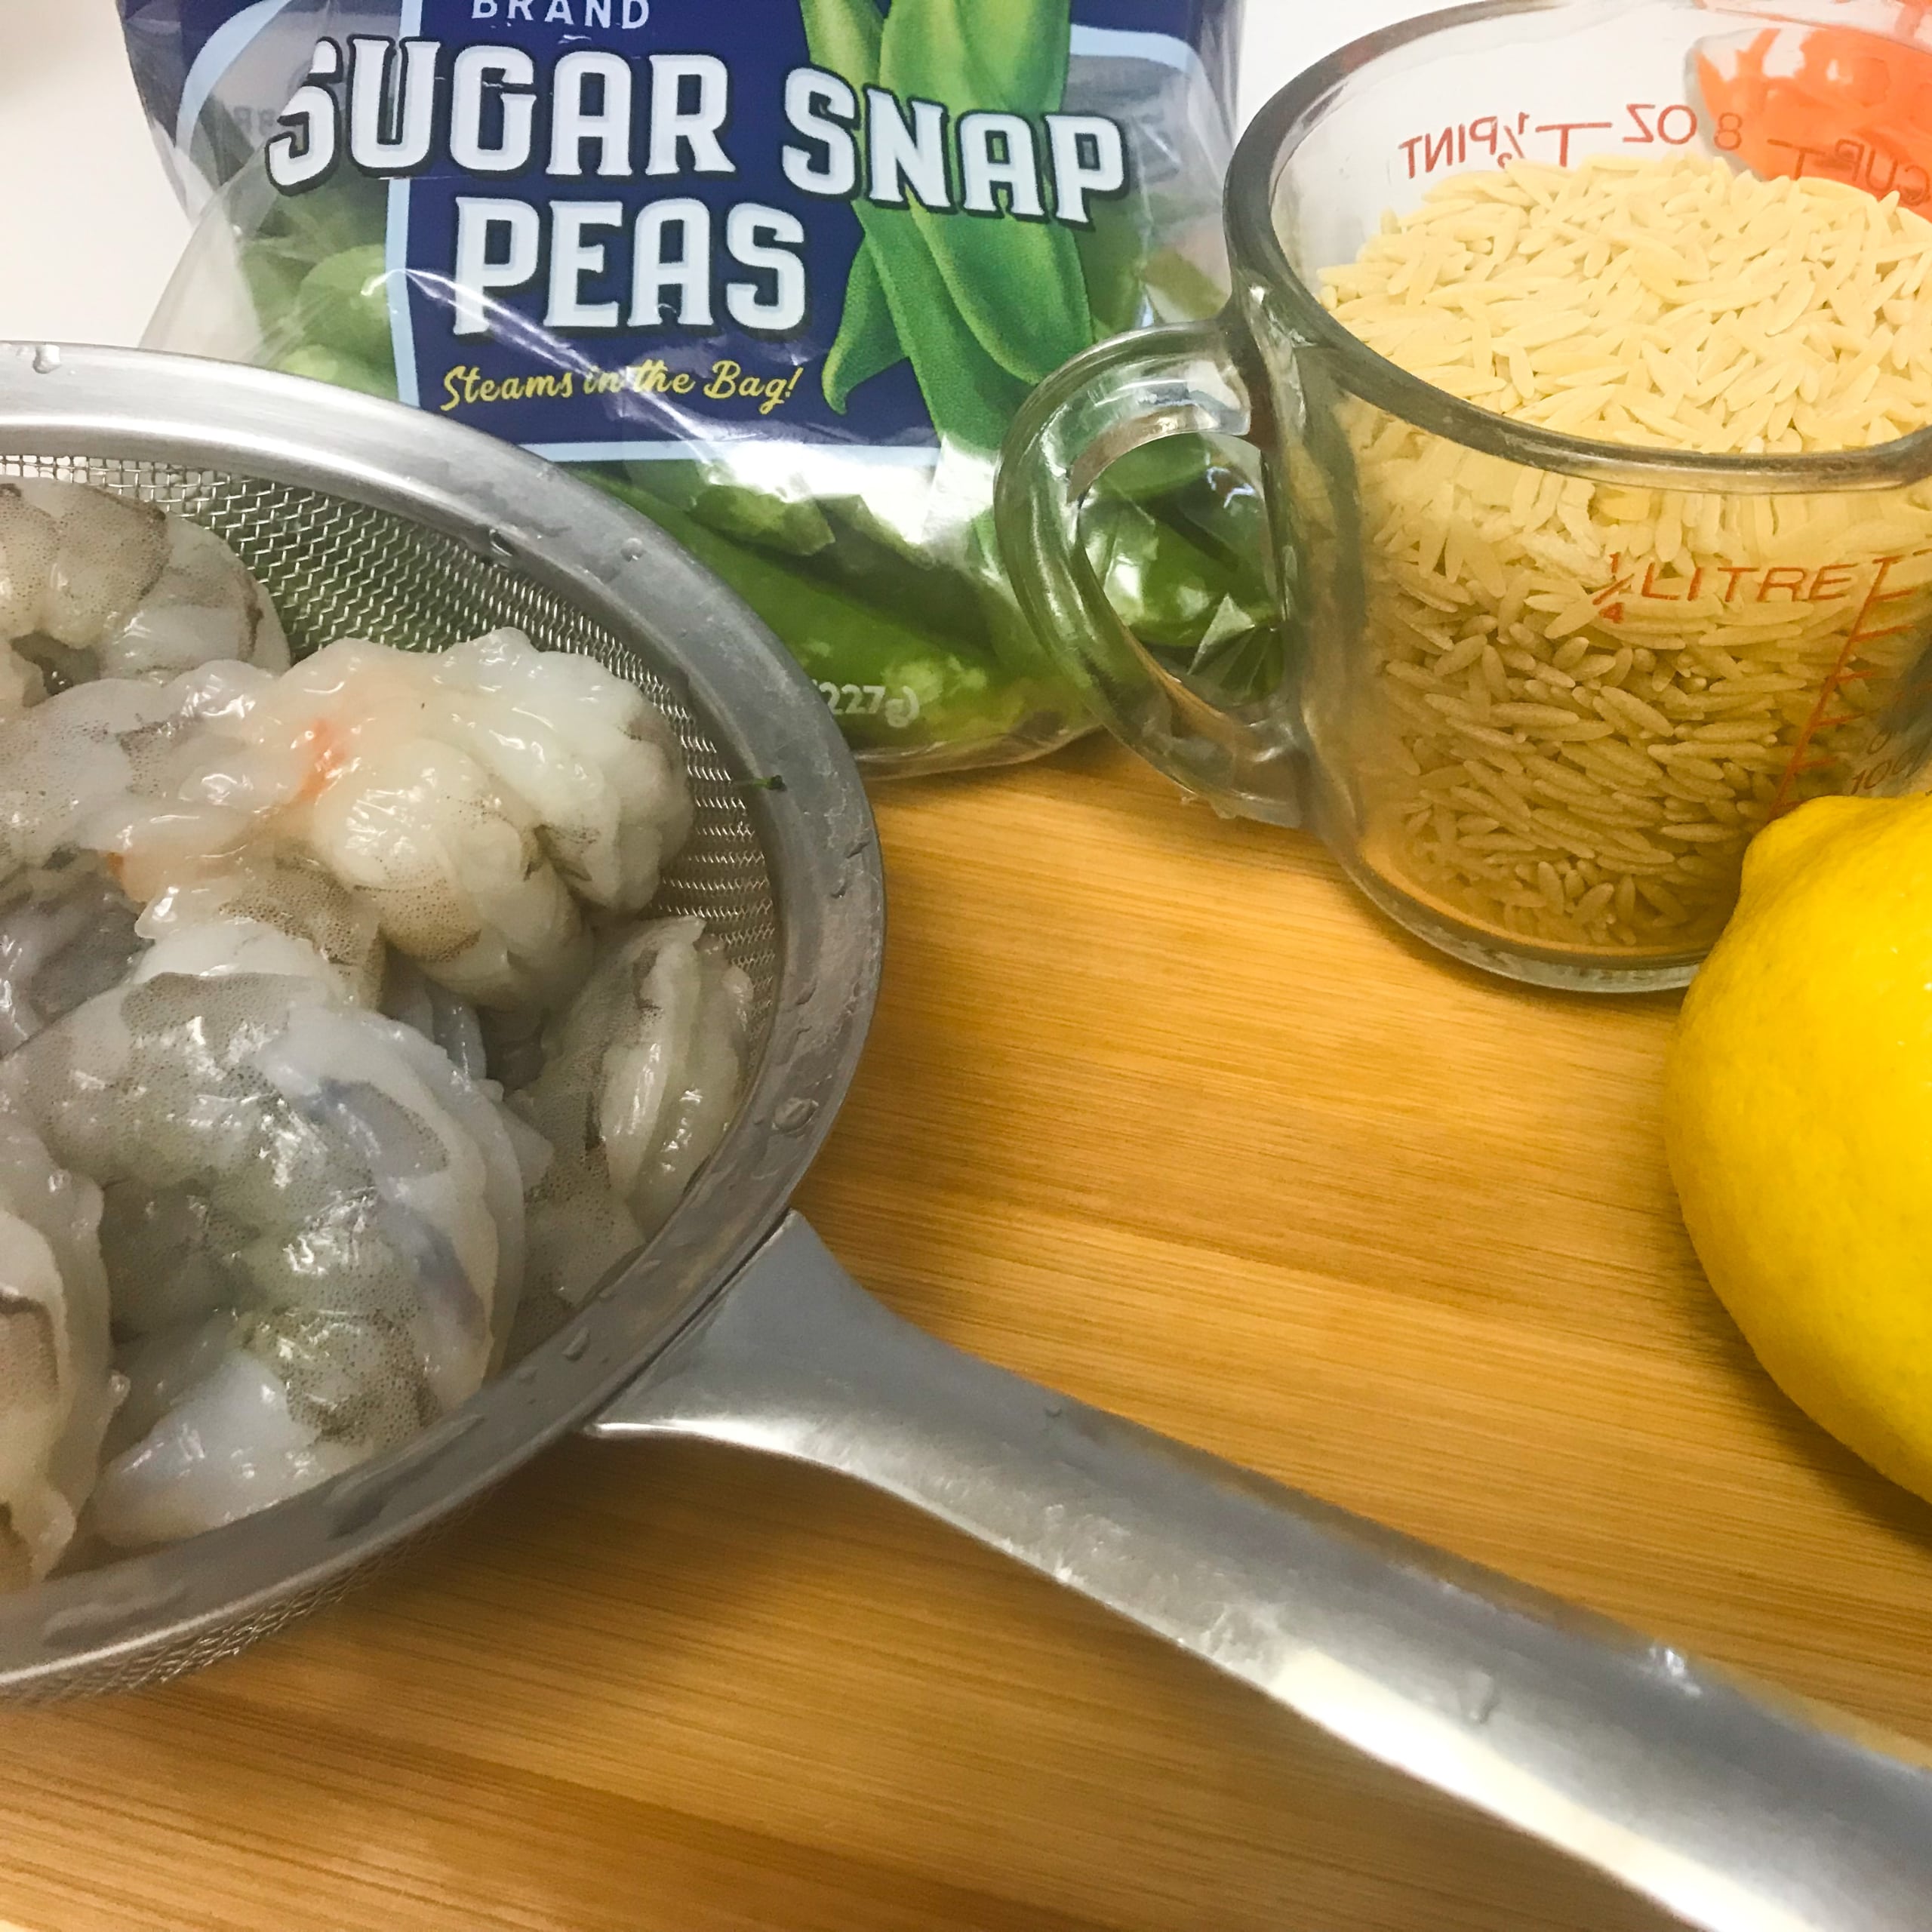 Shrimp, Lemon, Dill & Orzo Salad | My Curated Tastes